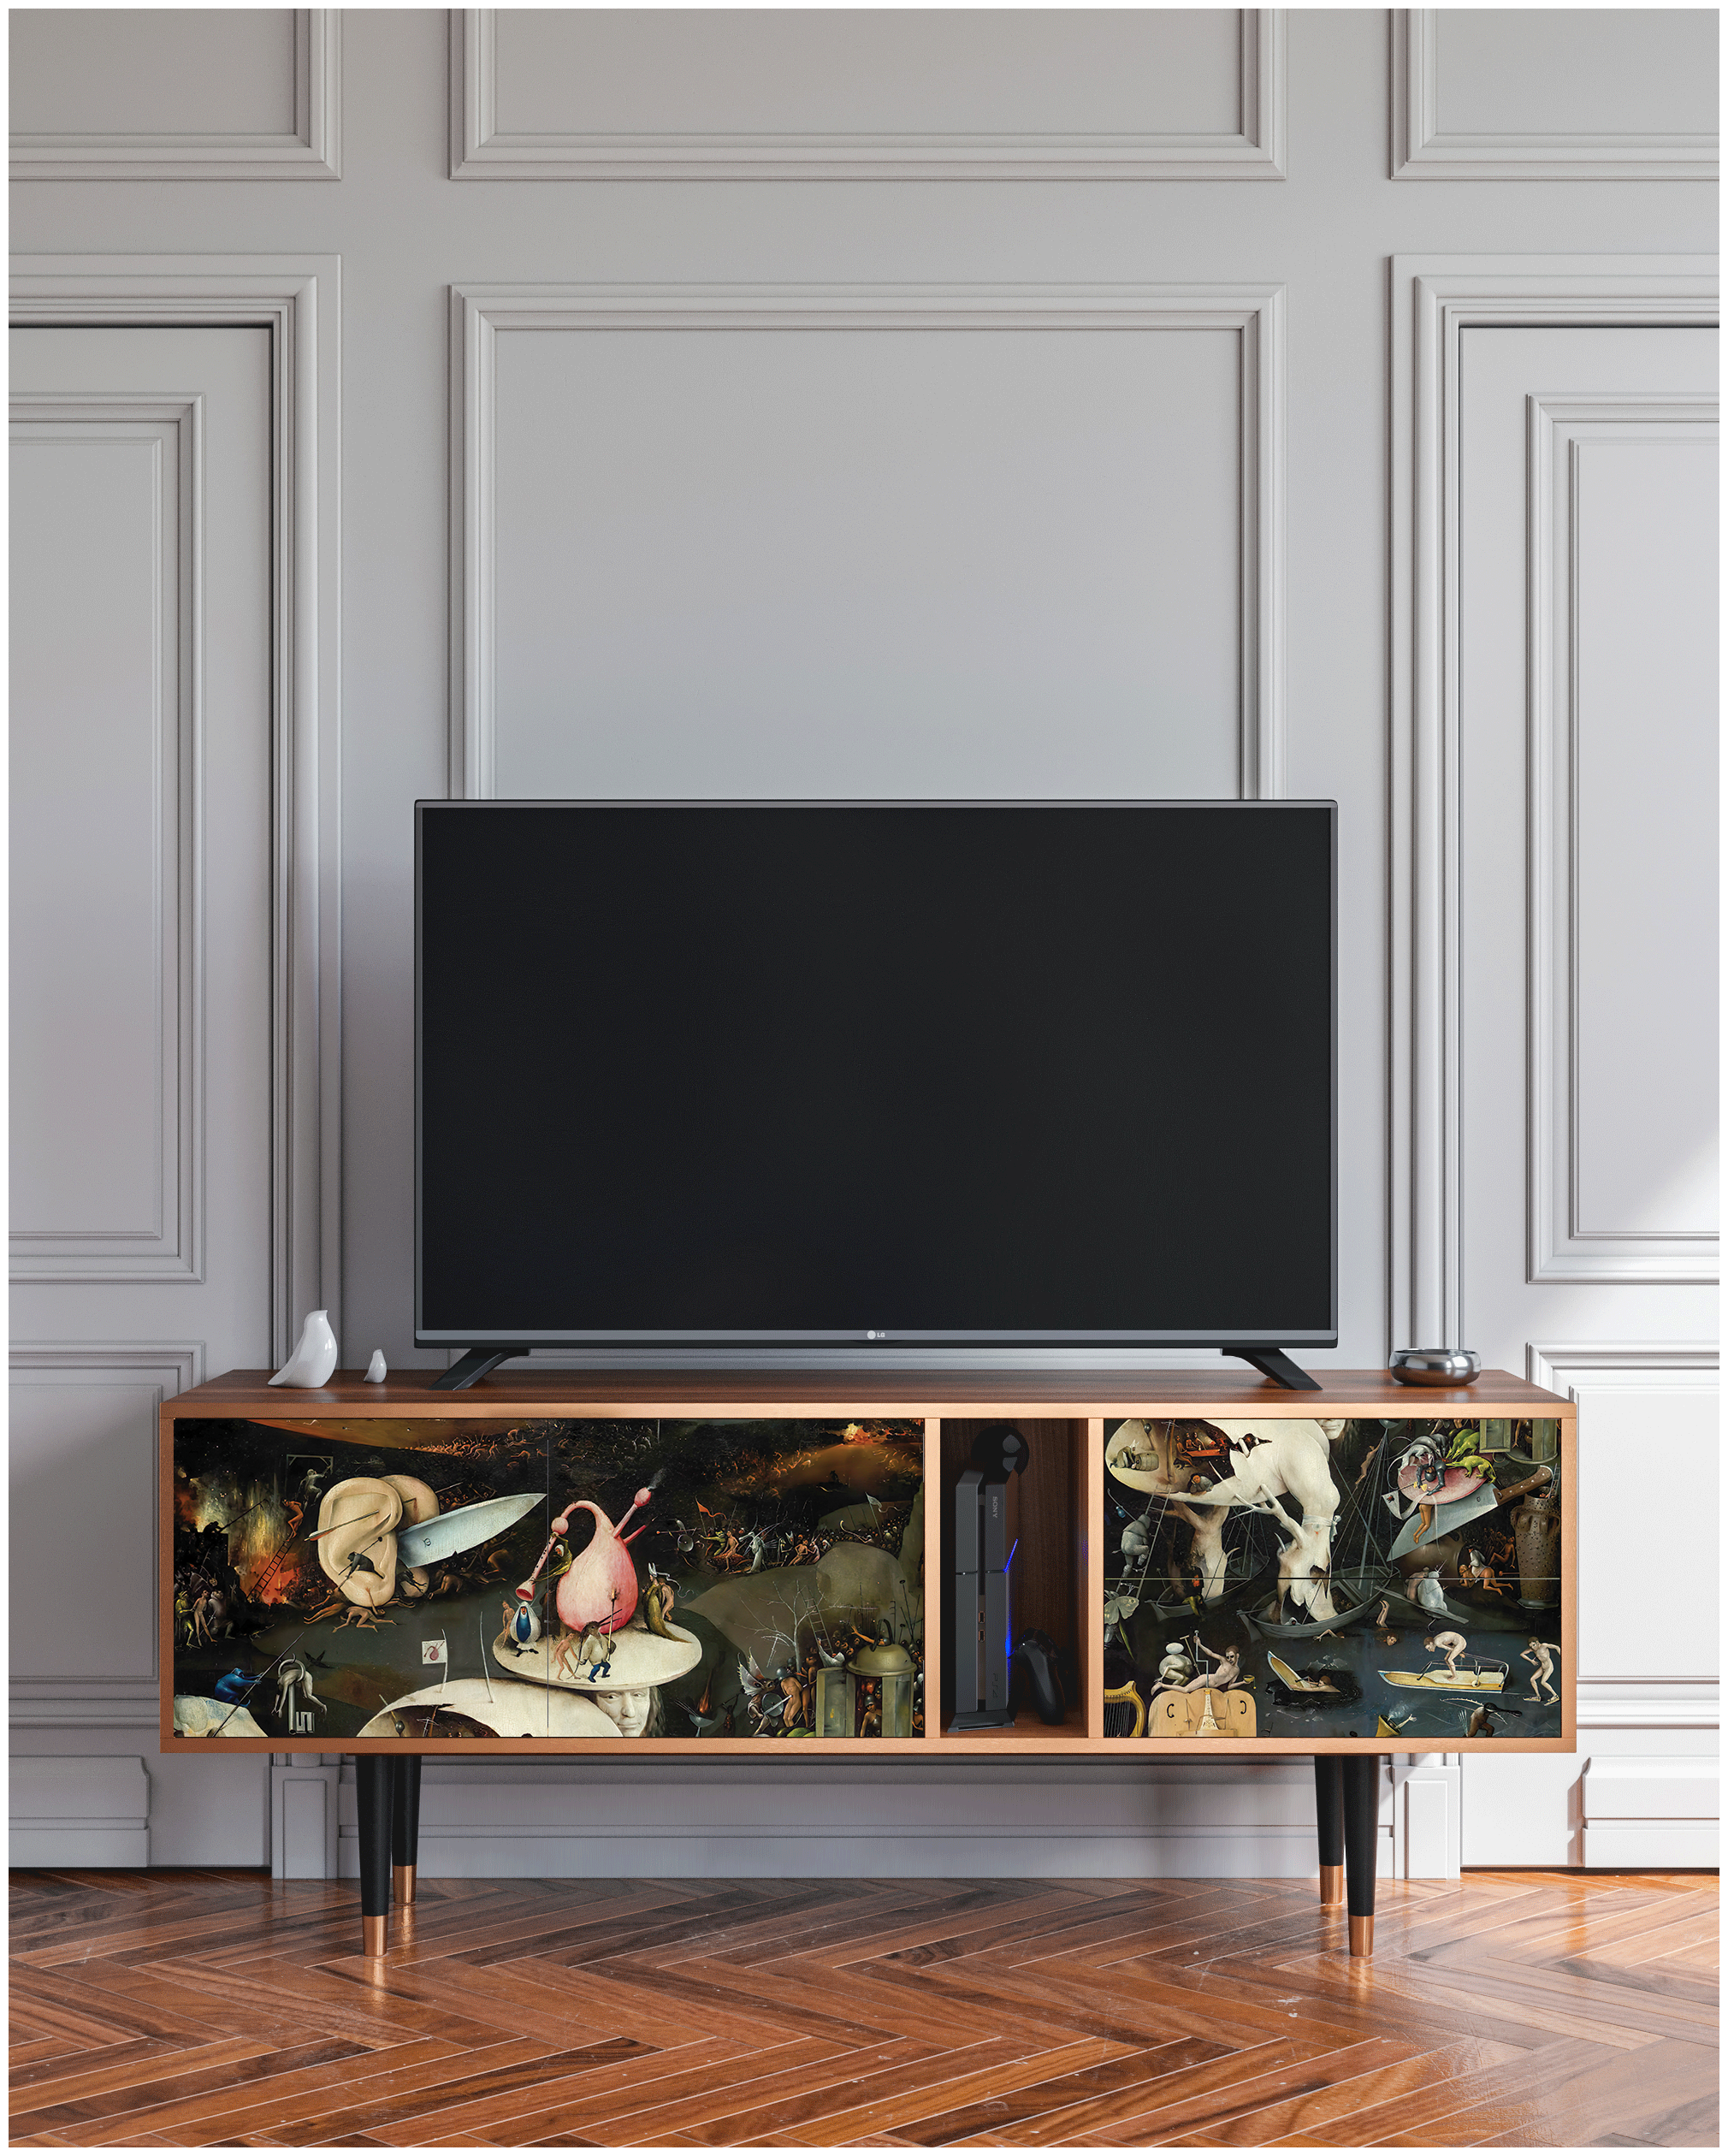 ТВ-Тумба - STORYZ - T1 The Garden of Earthly Delights by Hieronymus Bosch, 170 x 69 x 48 см, Орех